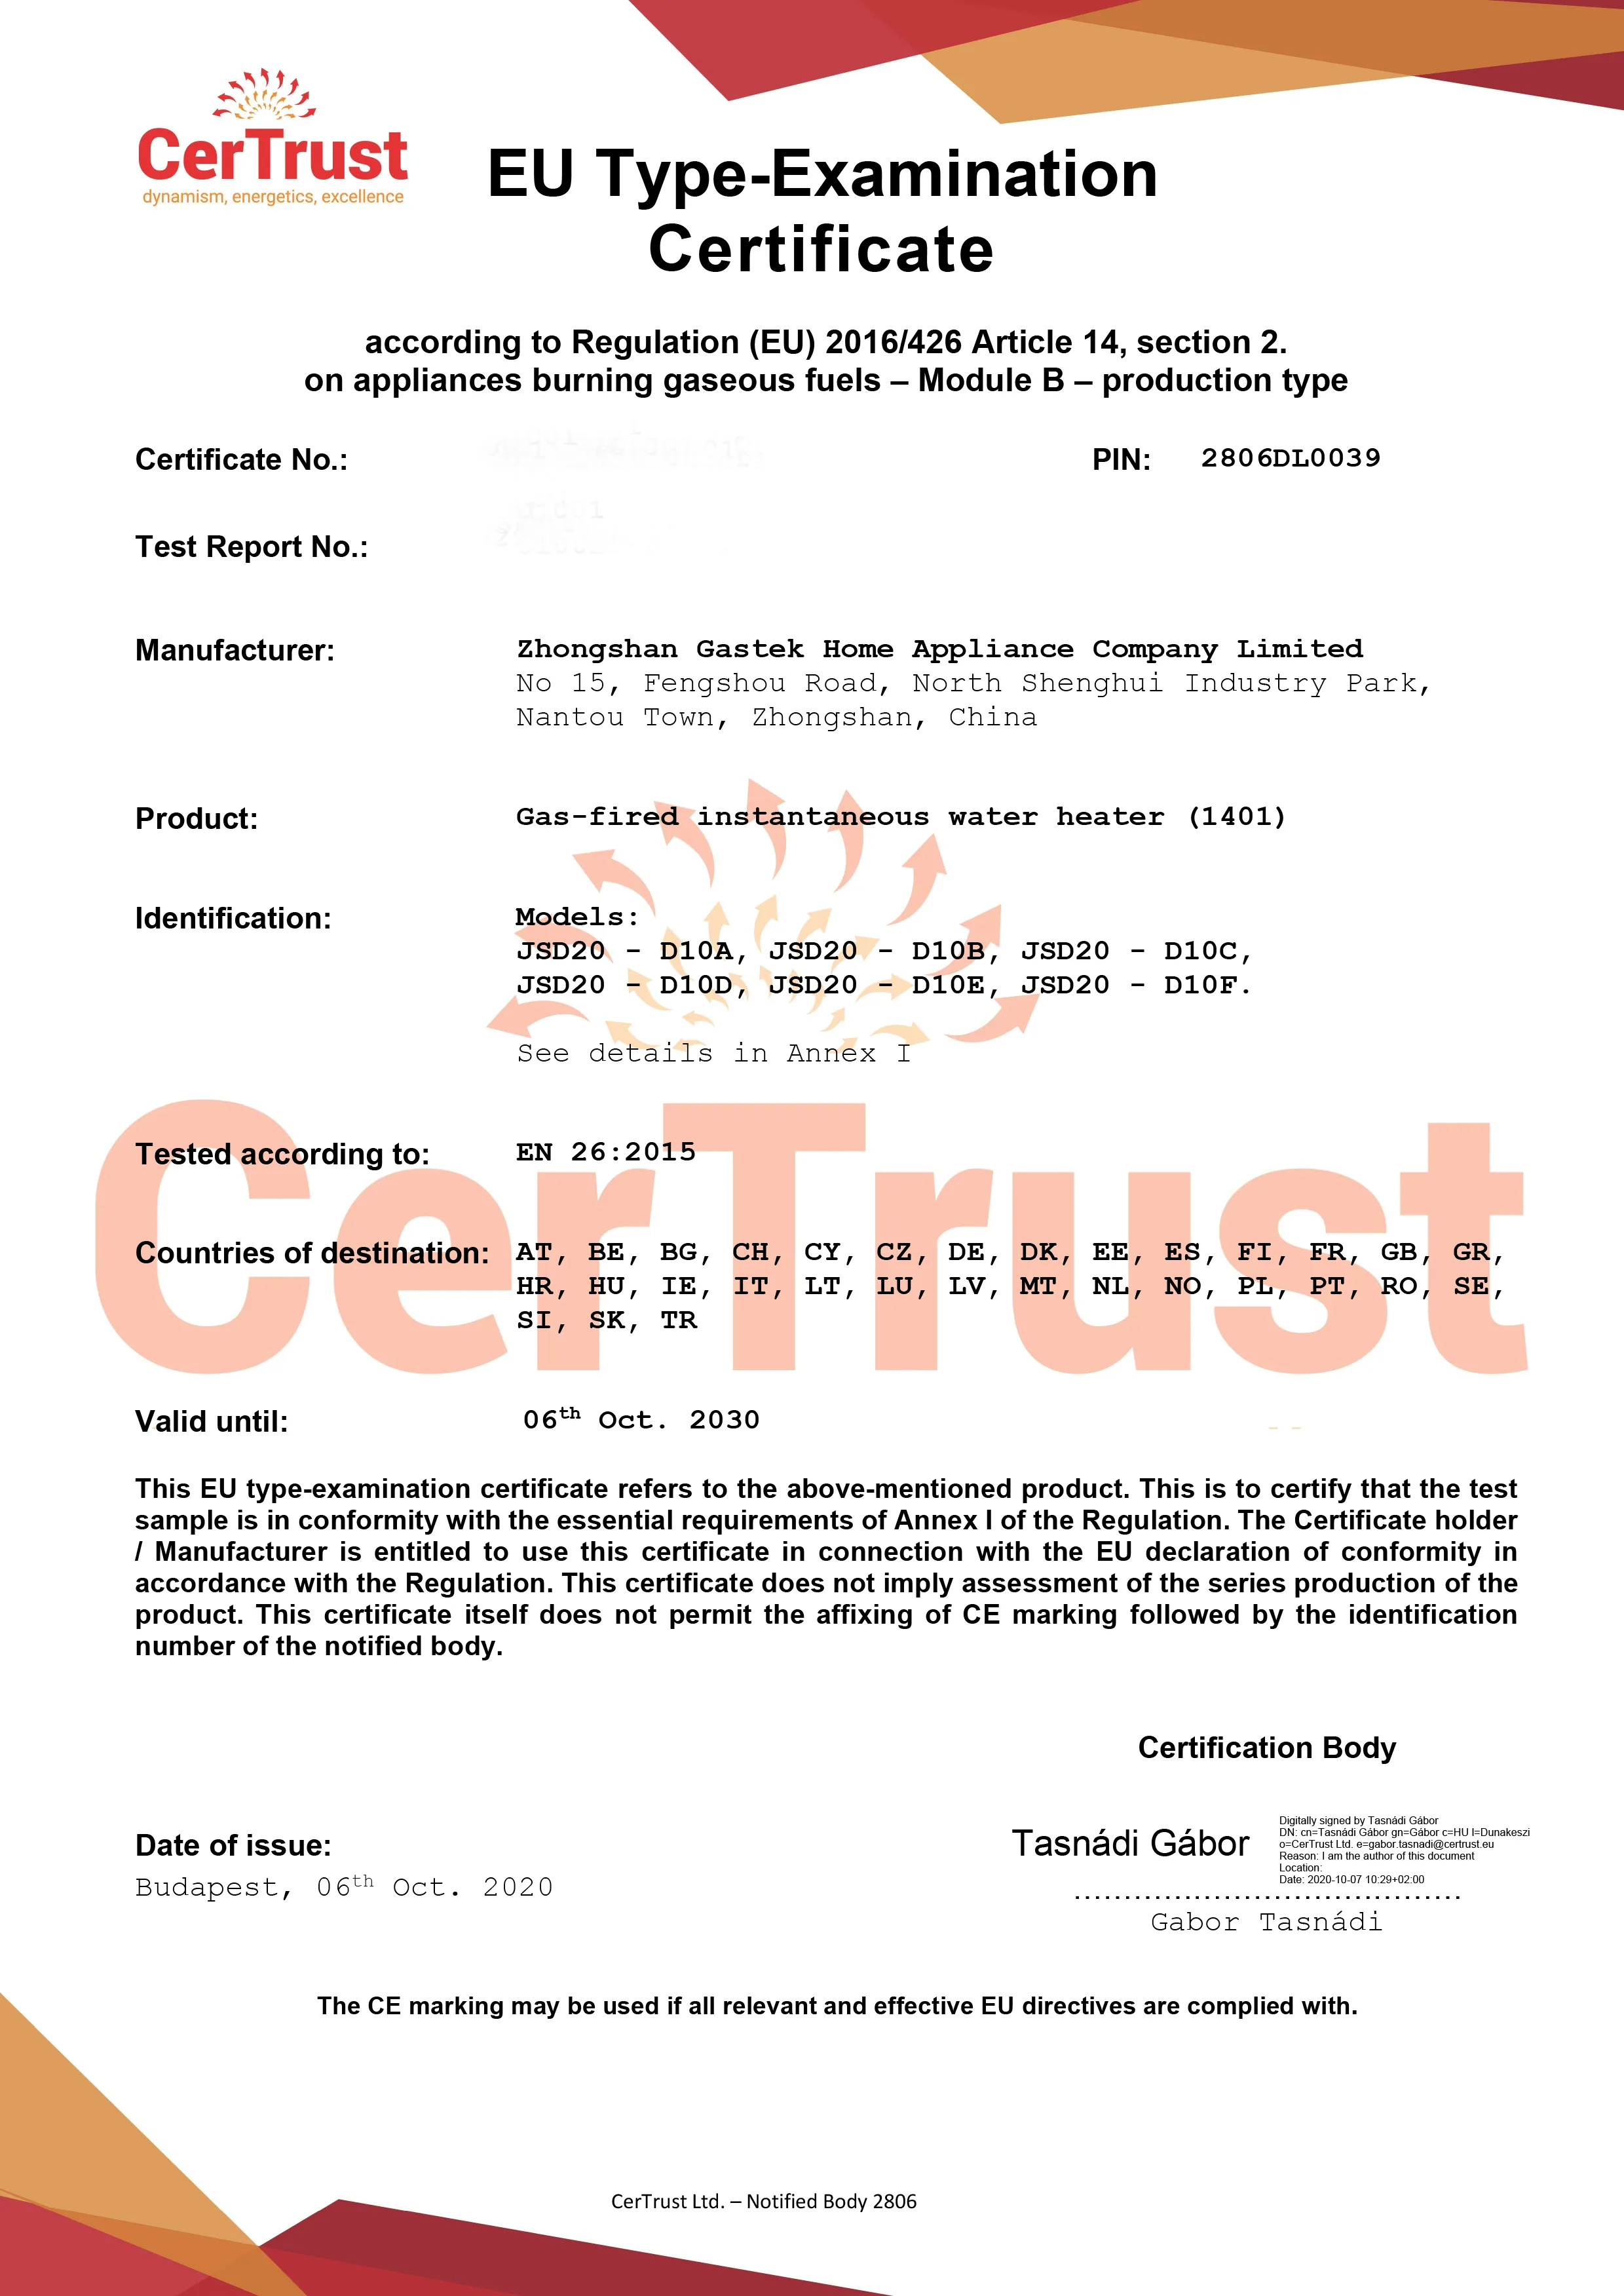 Gastek ha ottenuto il certificato CE di scaldabagno a gas in questo ottobre